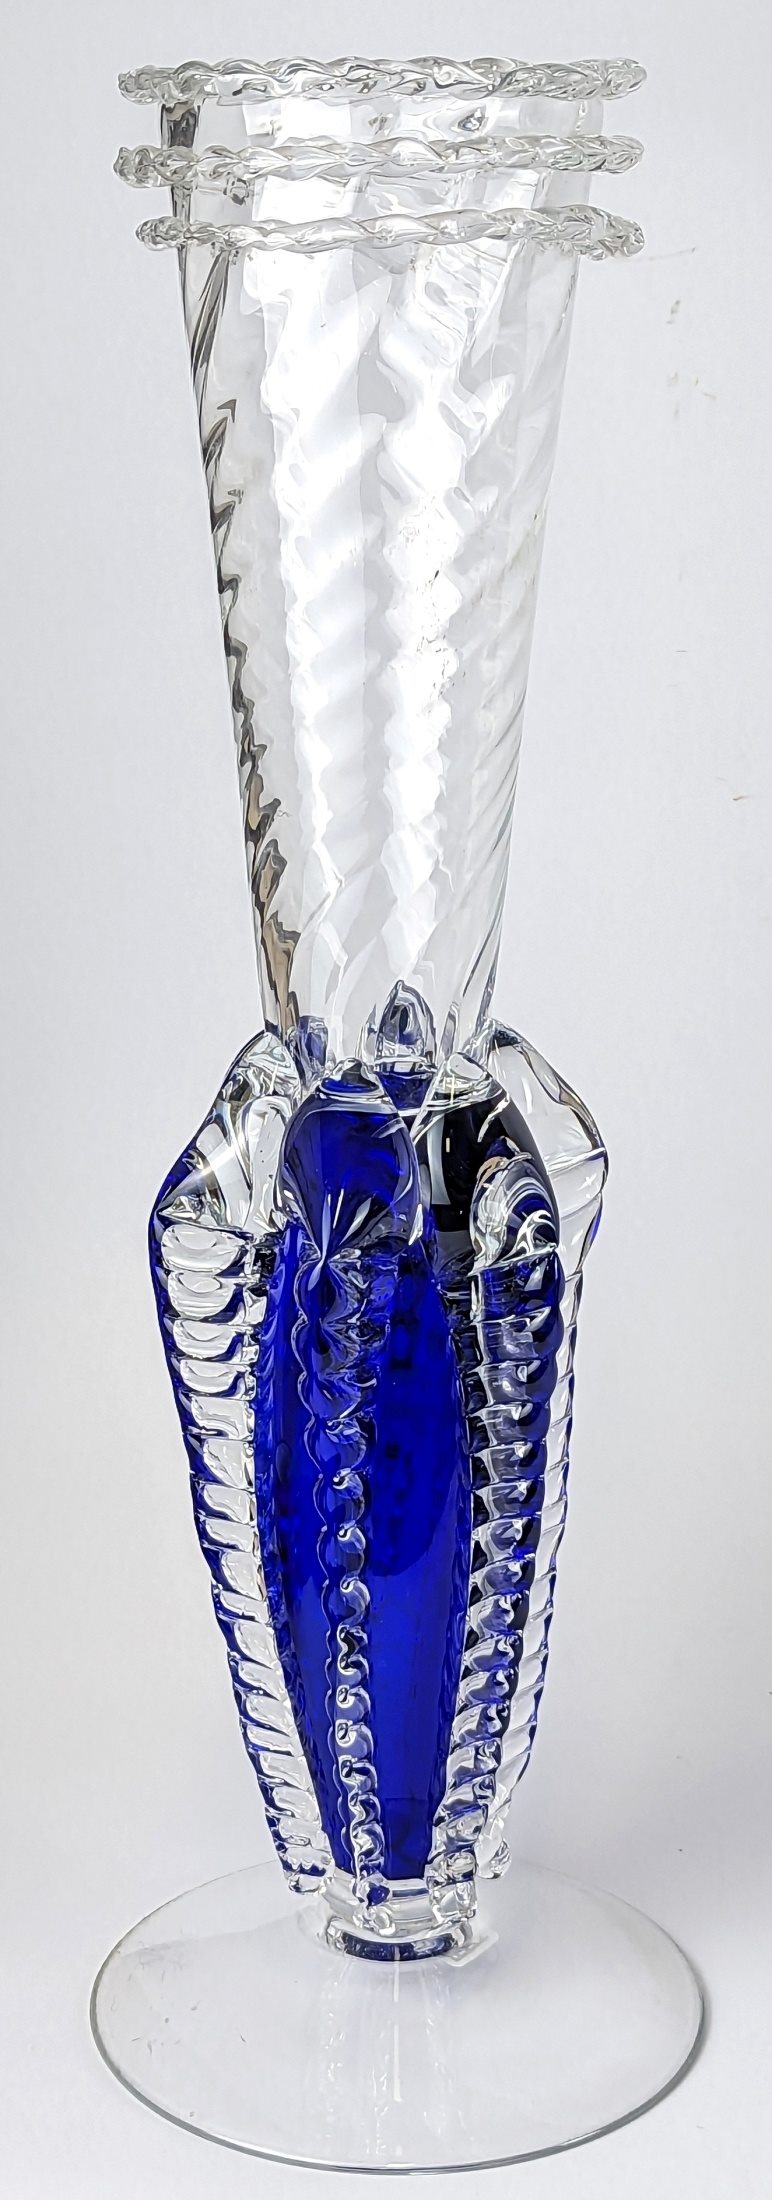 Bořek Šípek - Modrá váza